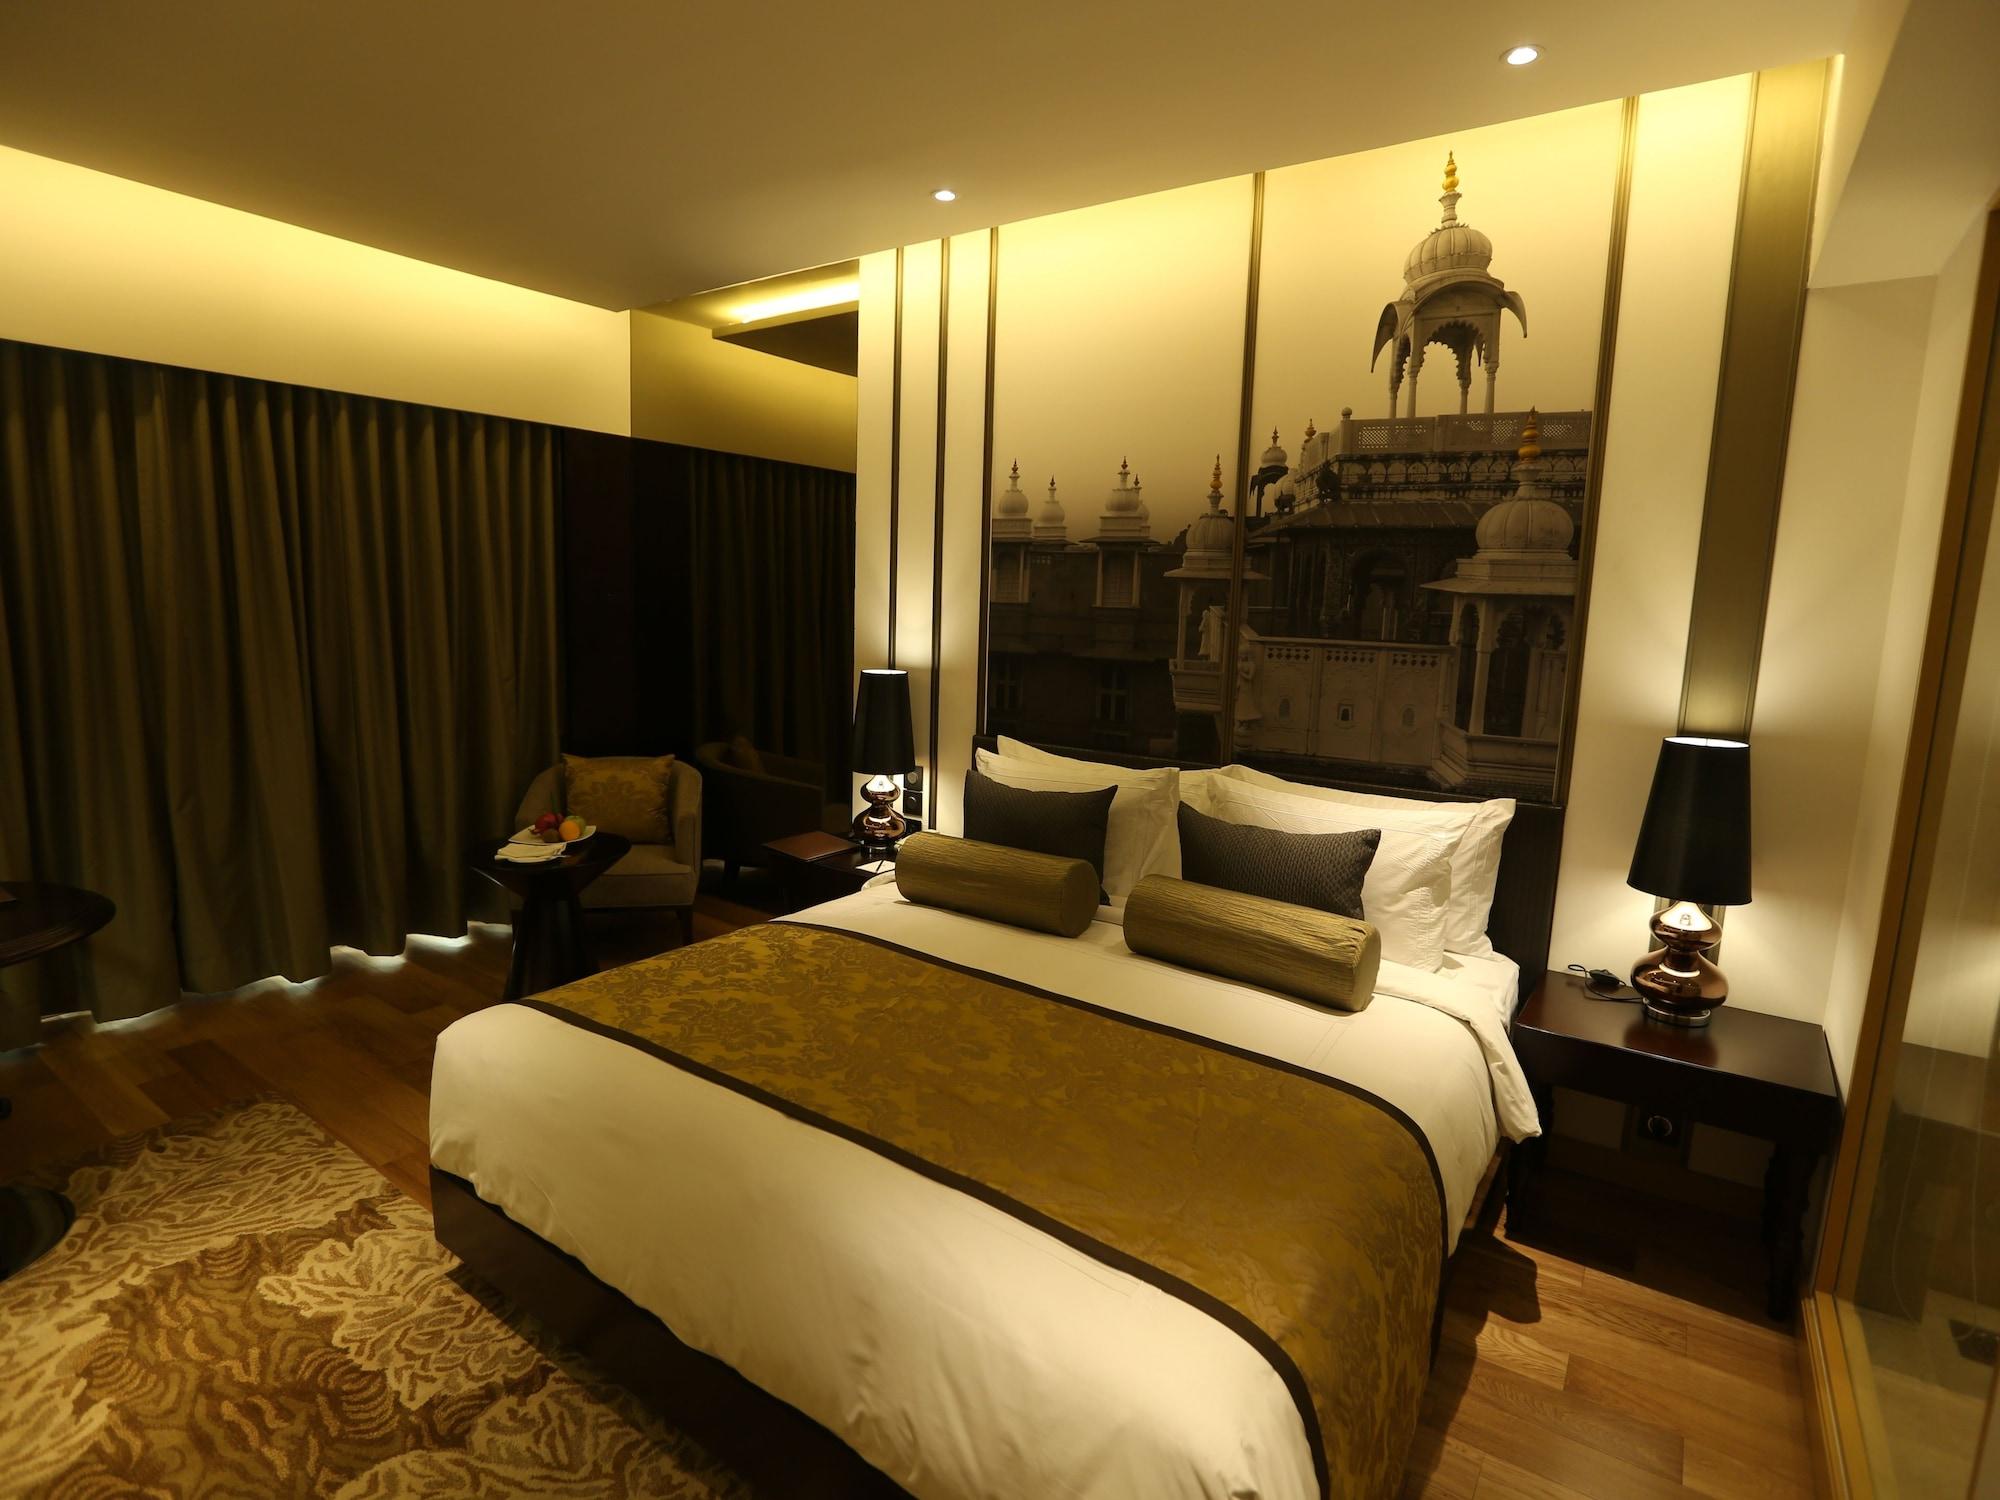 Pride Plaza Hotel, Aerocity Nuova Delhi Esterno foto